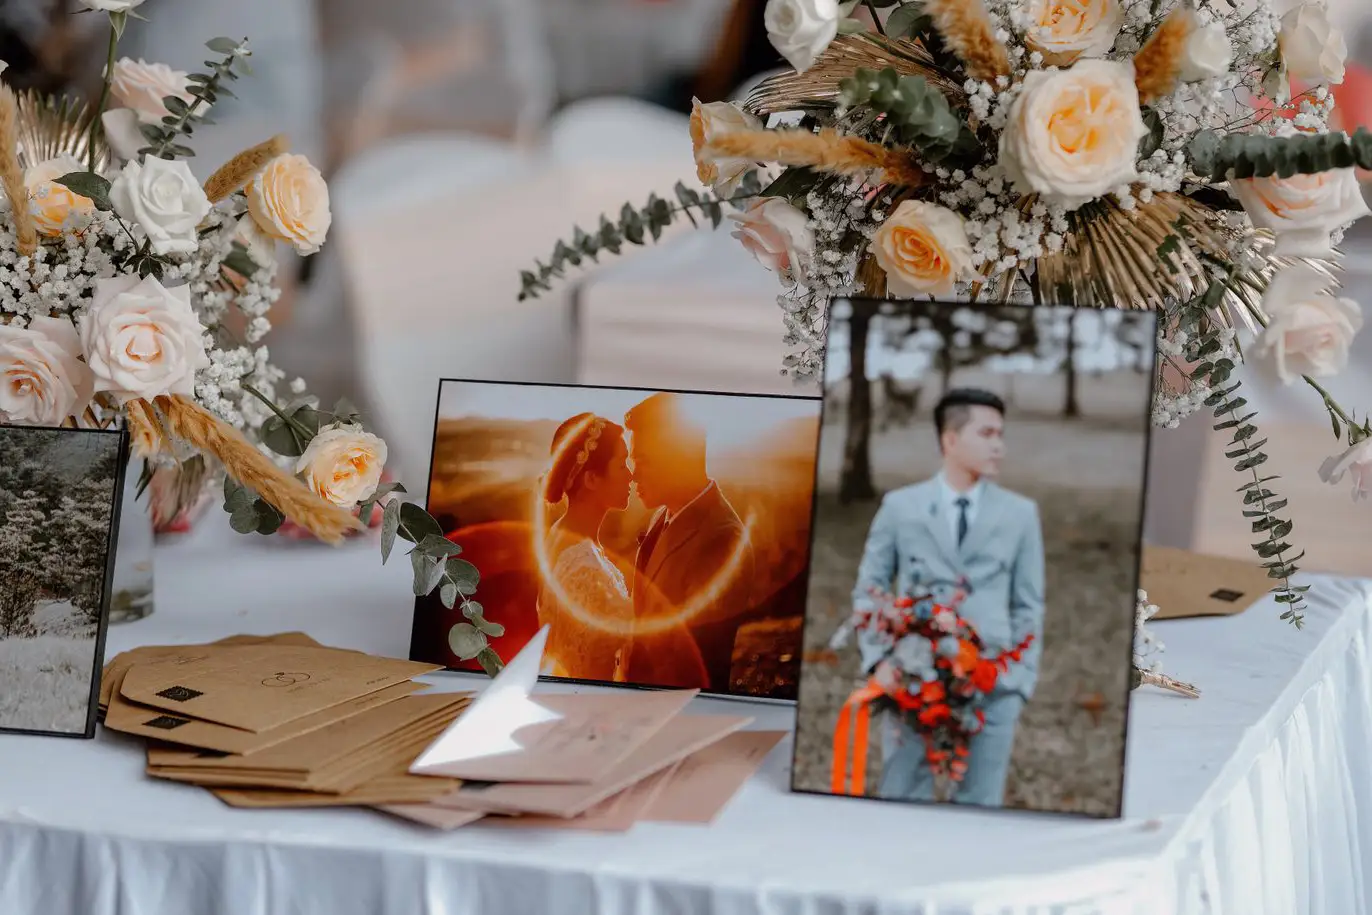 Mariage créatif : bouquets, photos et enveloppes personnalisées